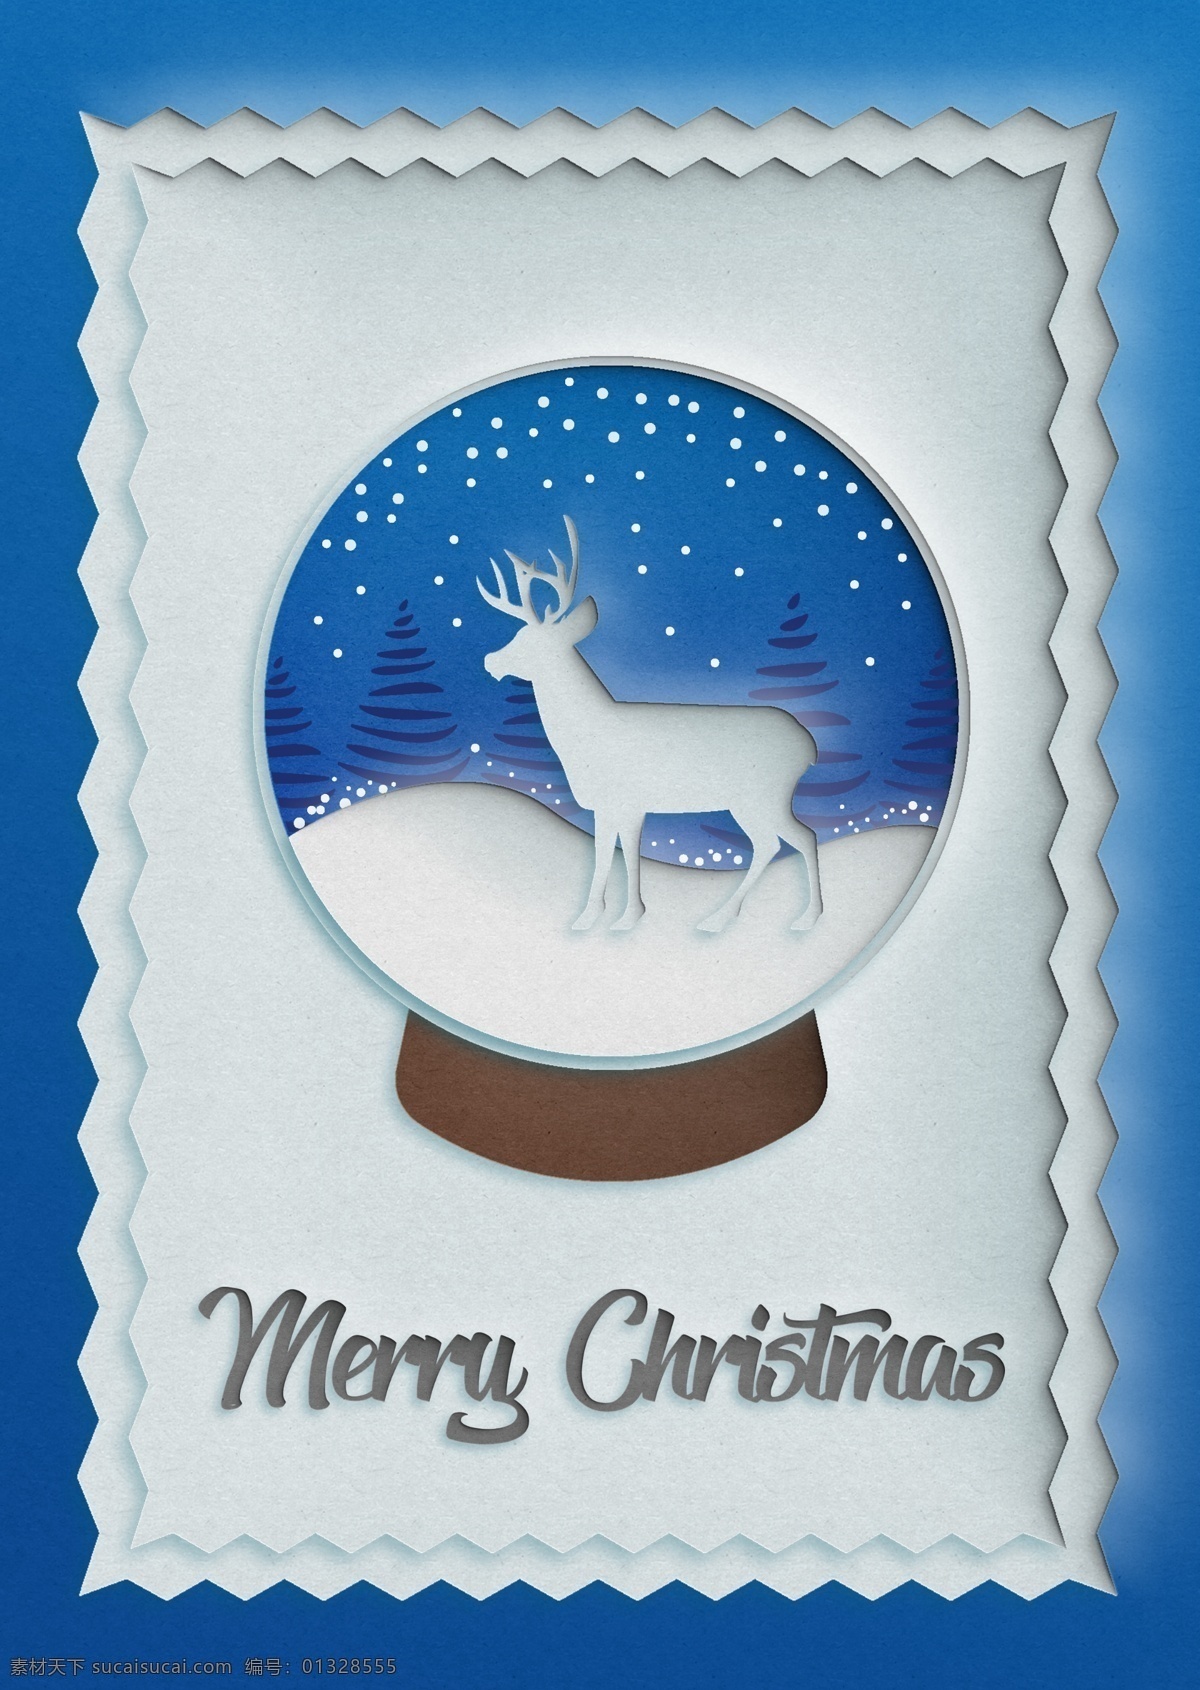 蓝色 创意 雪花 球 圣诞 海报 圣诞节 促销 促销海报 宣传海报 圣诞海报 圣诞节海报 雪花球 麋鹿 剪纸